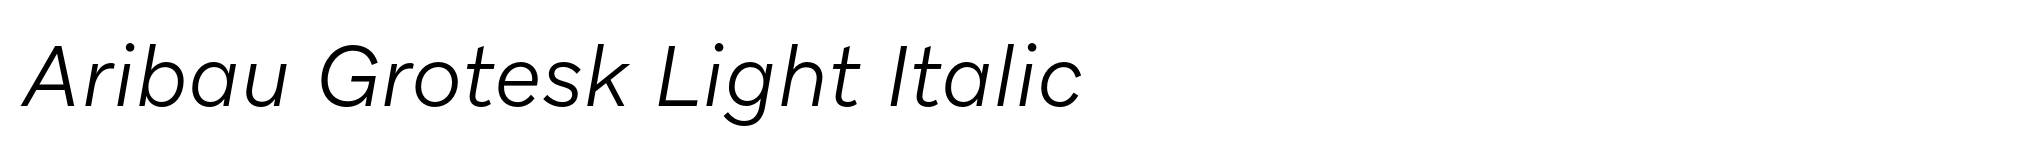 Aribau Grotesk Light Italic image